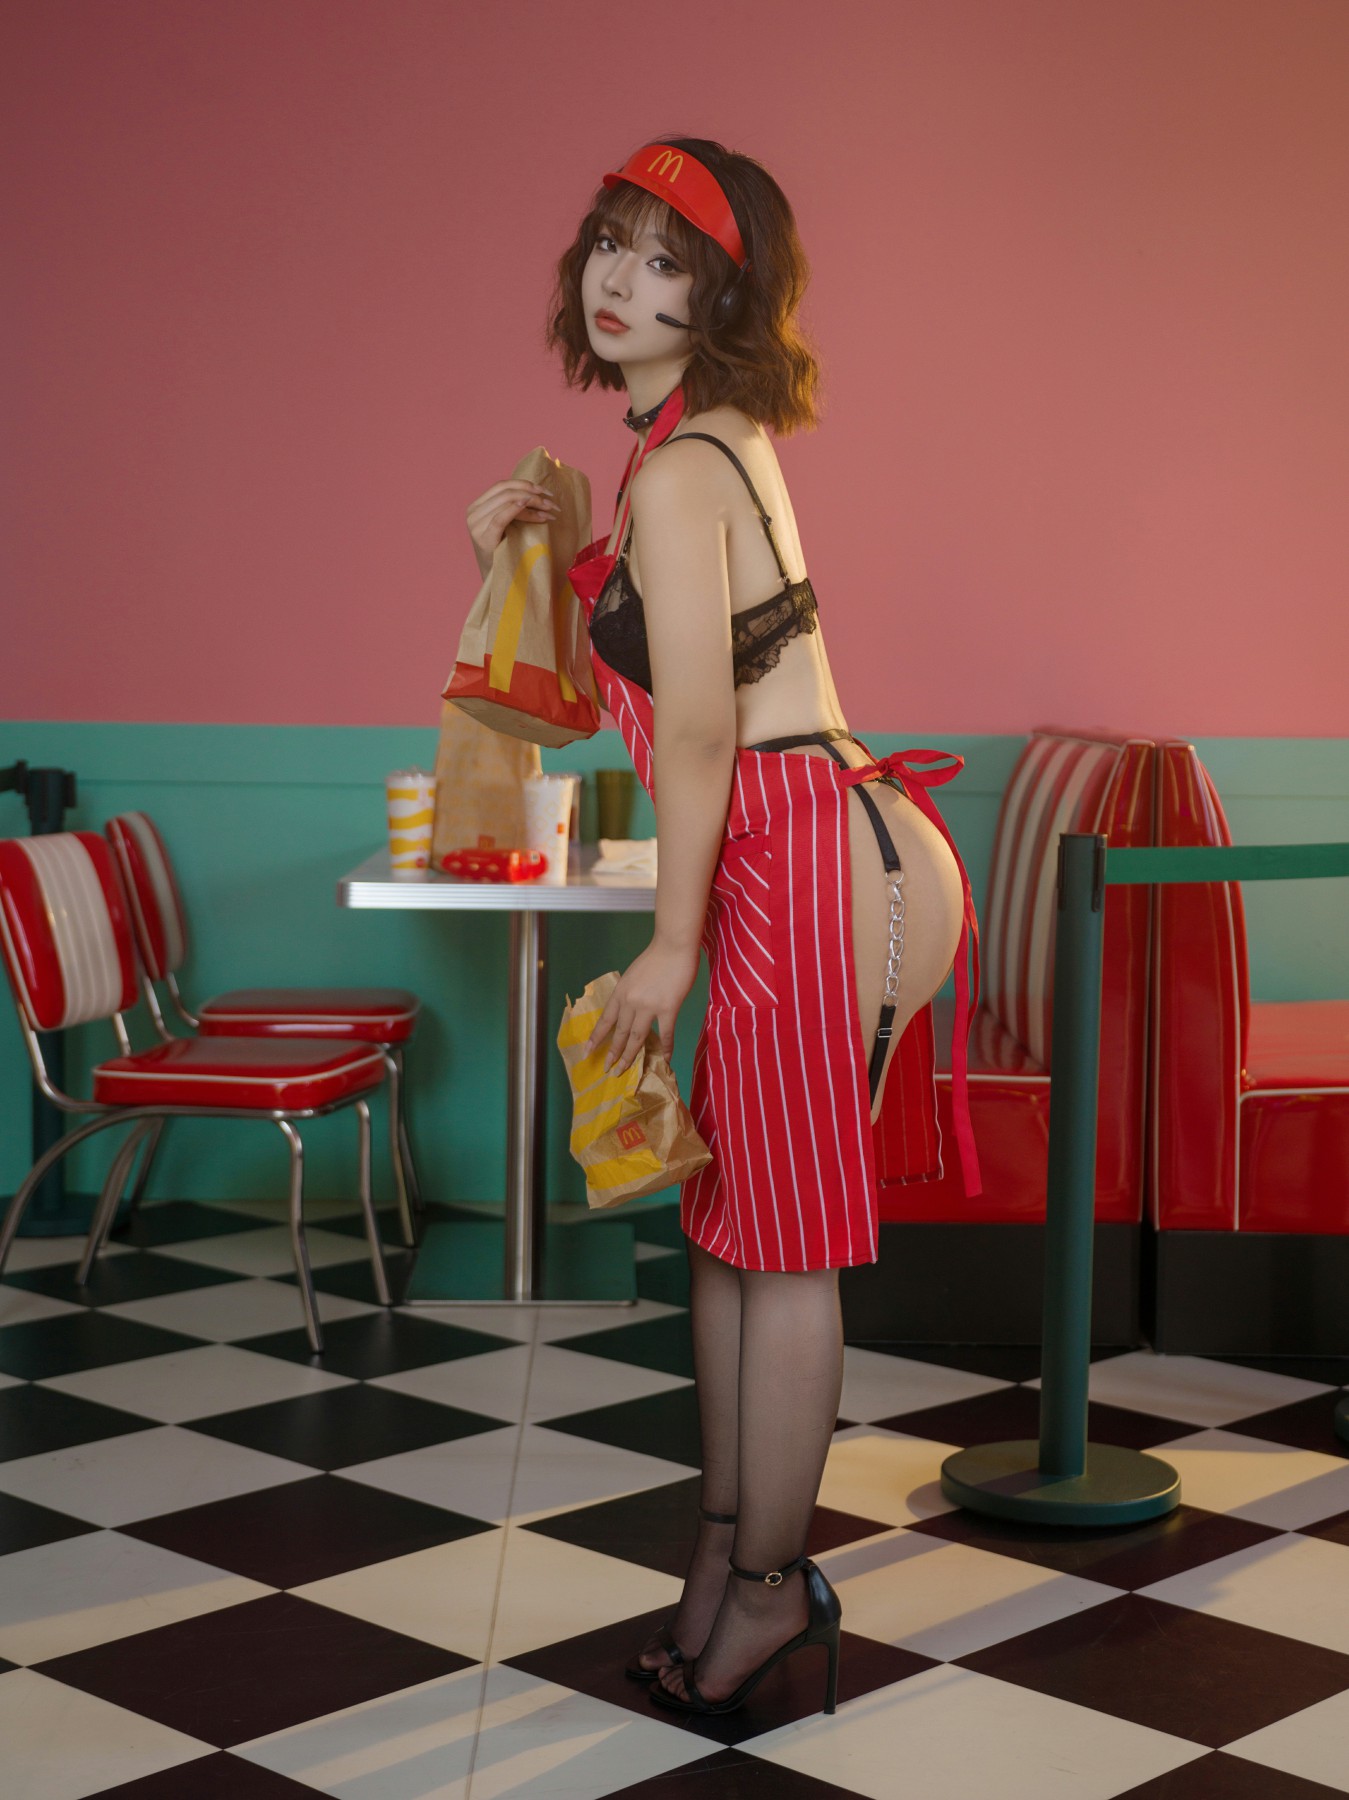 yuuhui玉汇 – 麦当劳的女服务员 第3张